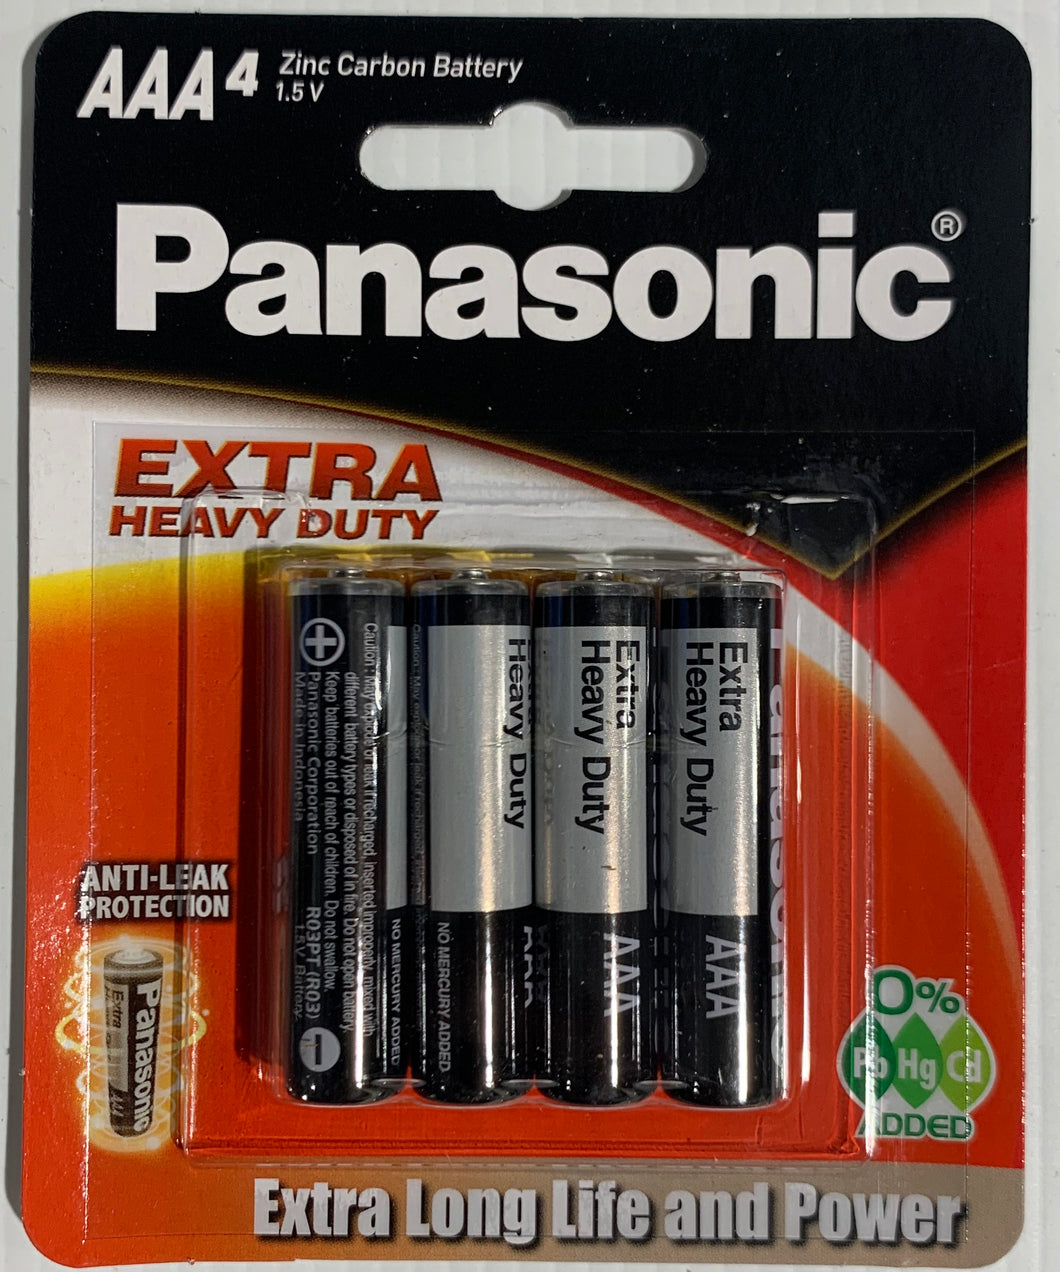 Panasonic AAA 4 Pack Batteries EXTRA Heavy Duty